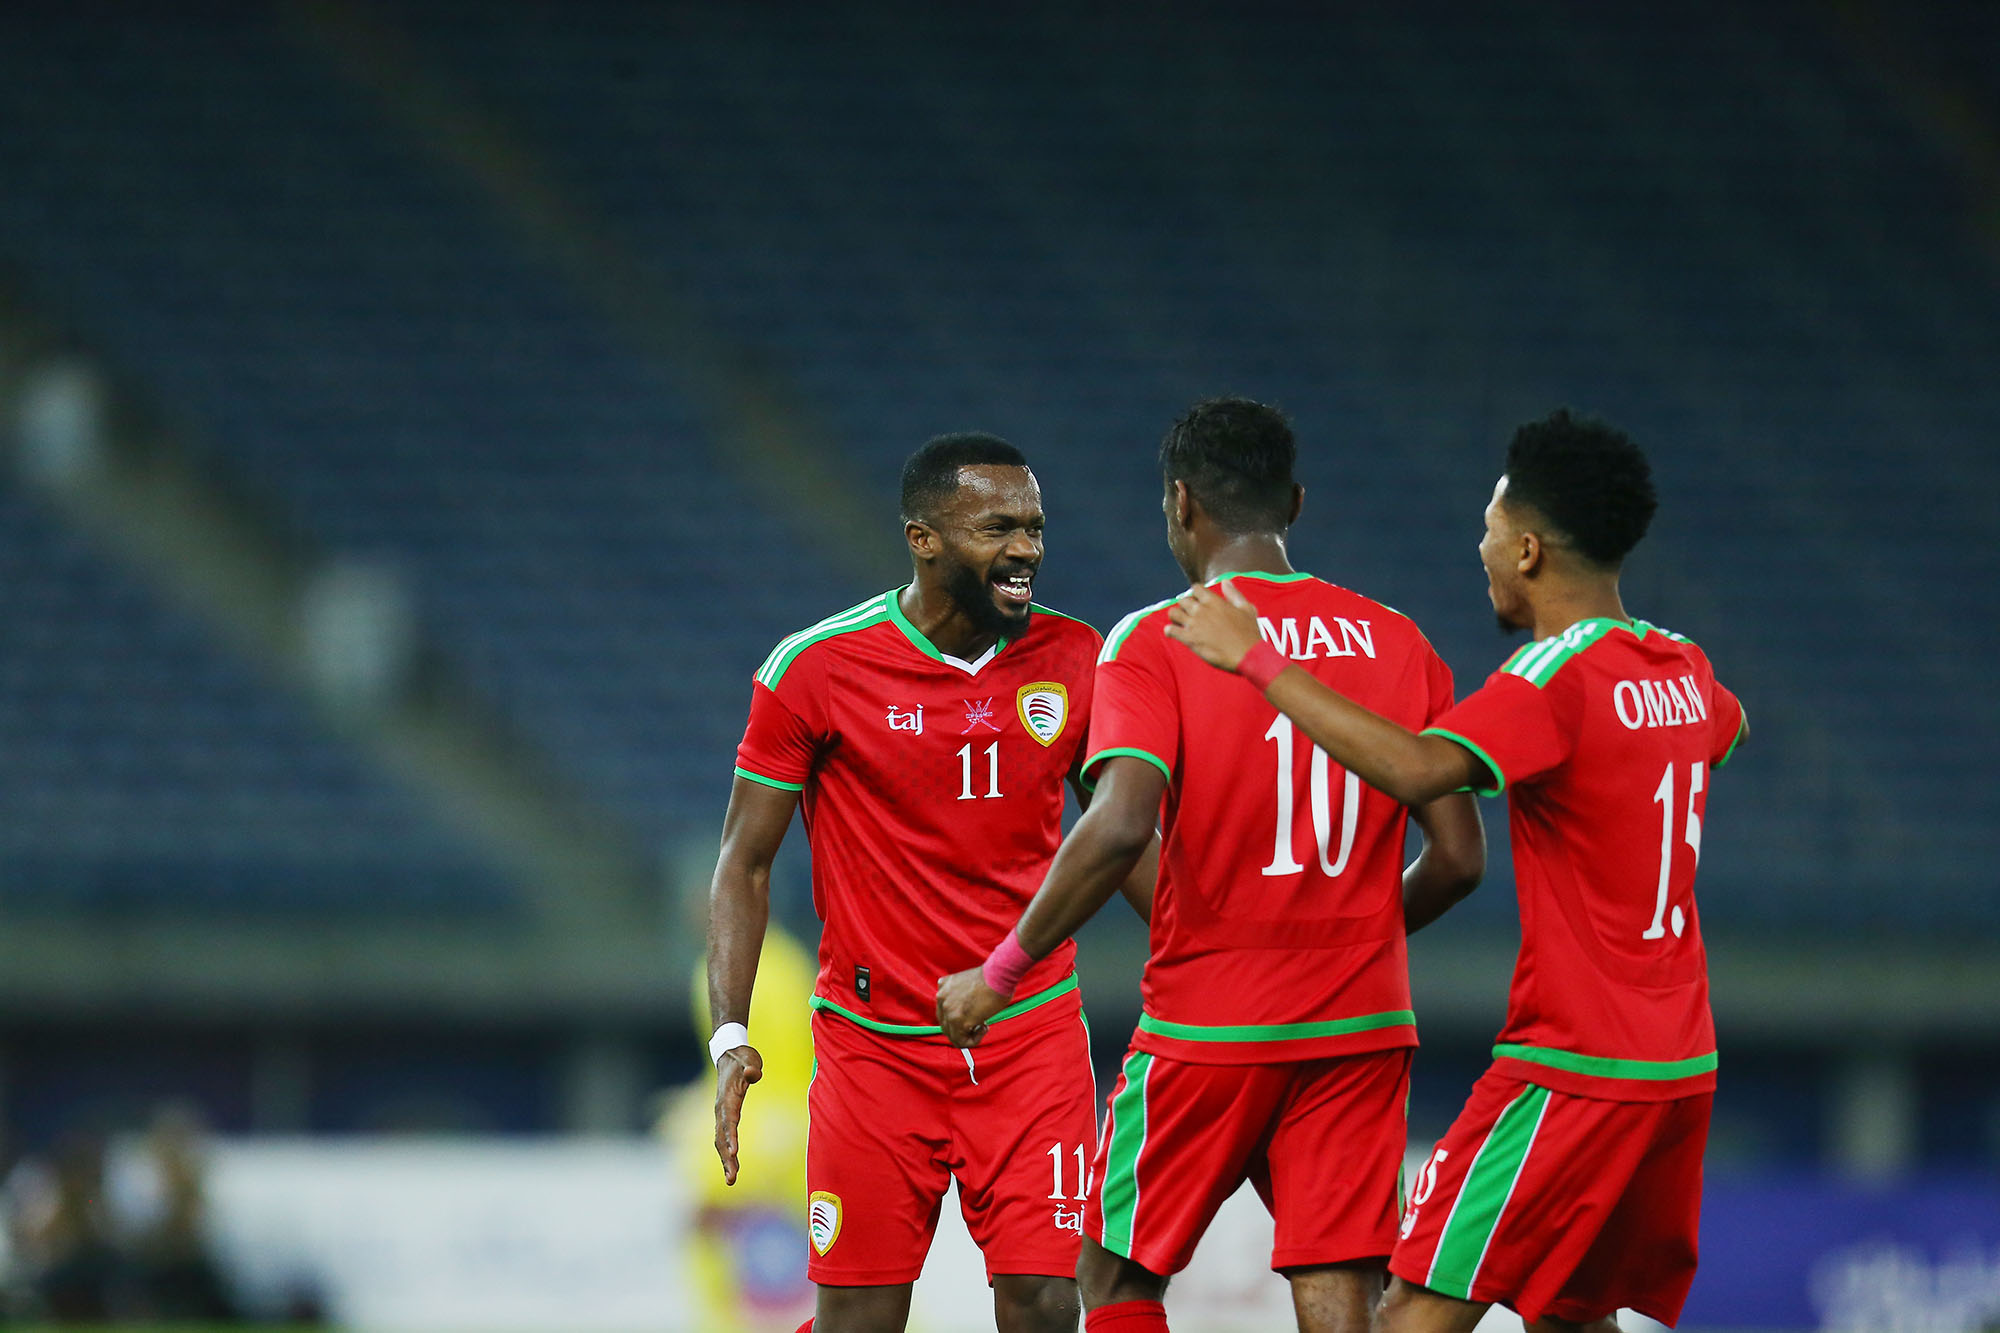 Half-time update: Oman lead Bahrain 1-0